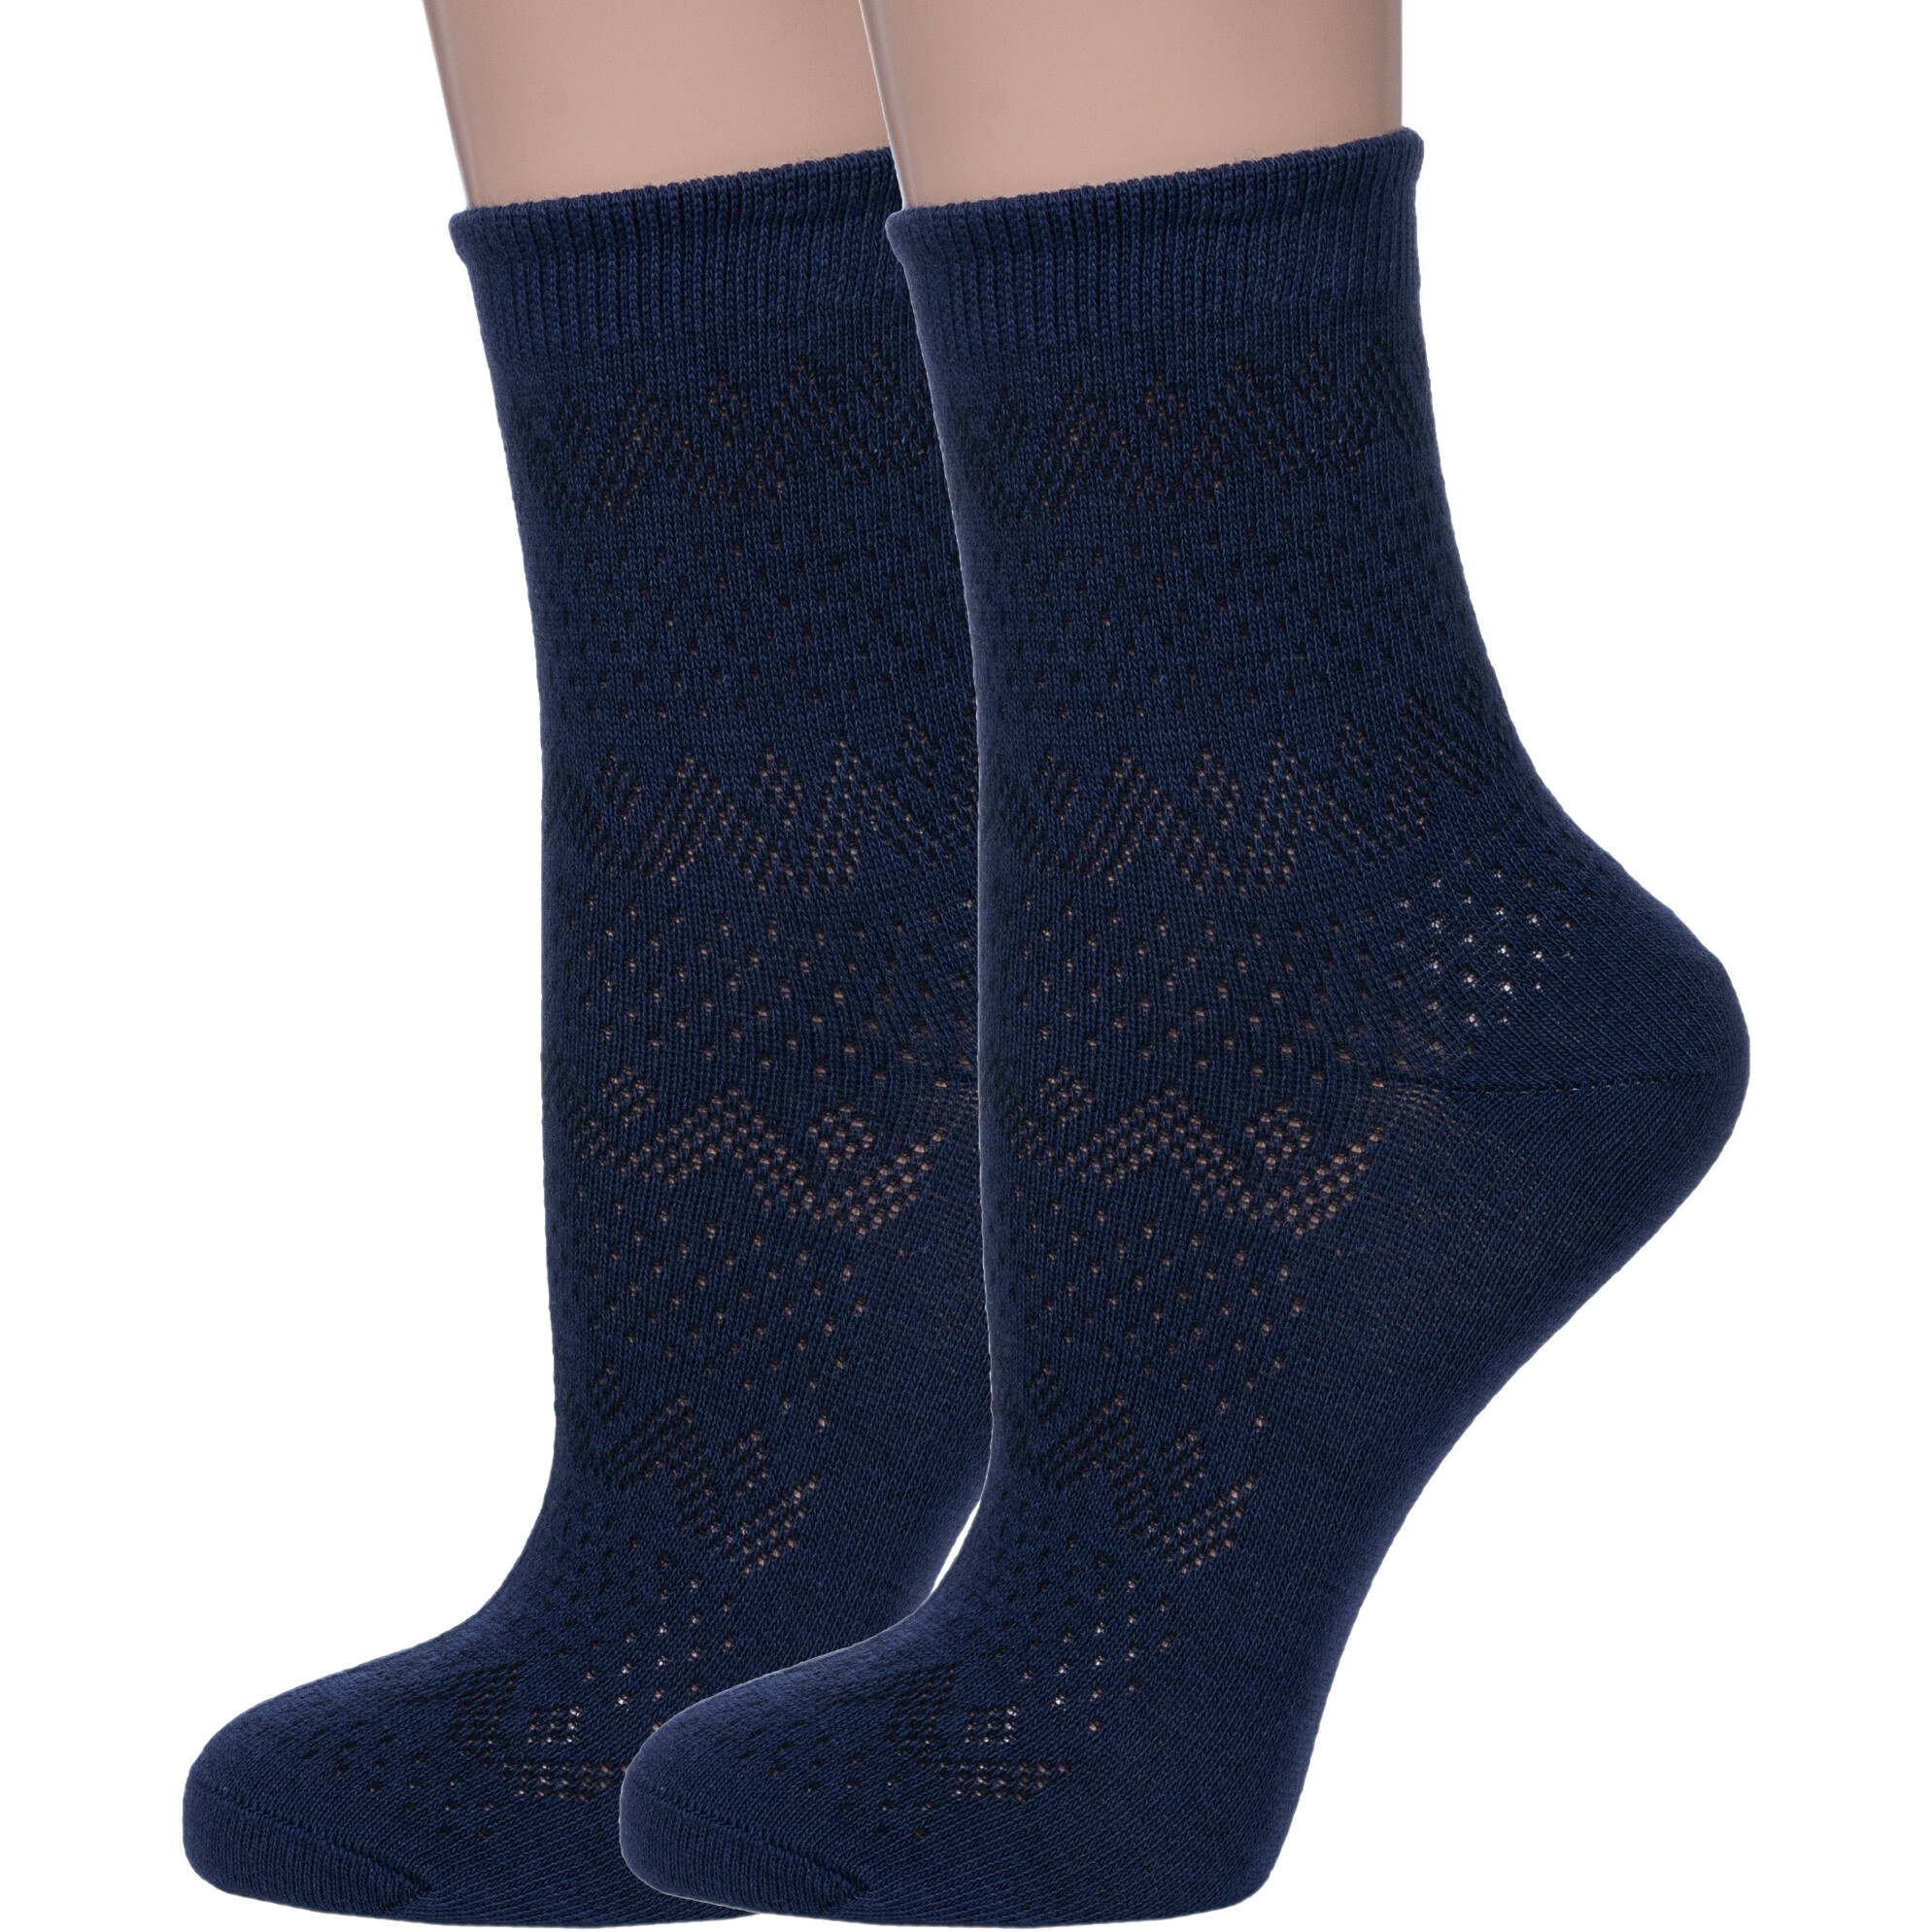 Комплект носков женских Смоленская Чулочная Фабрика 2-С196 синих 23, 2 пары